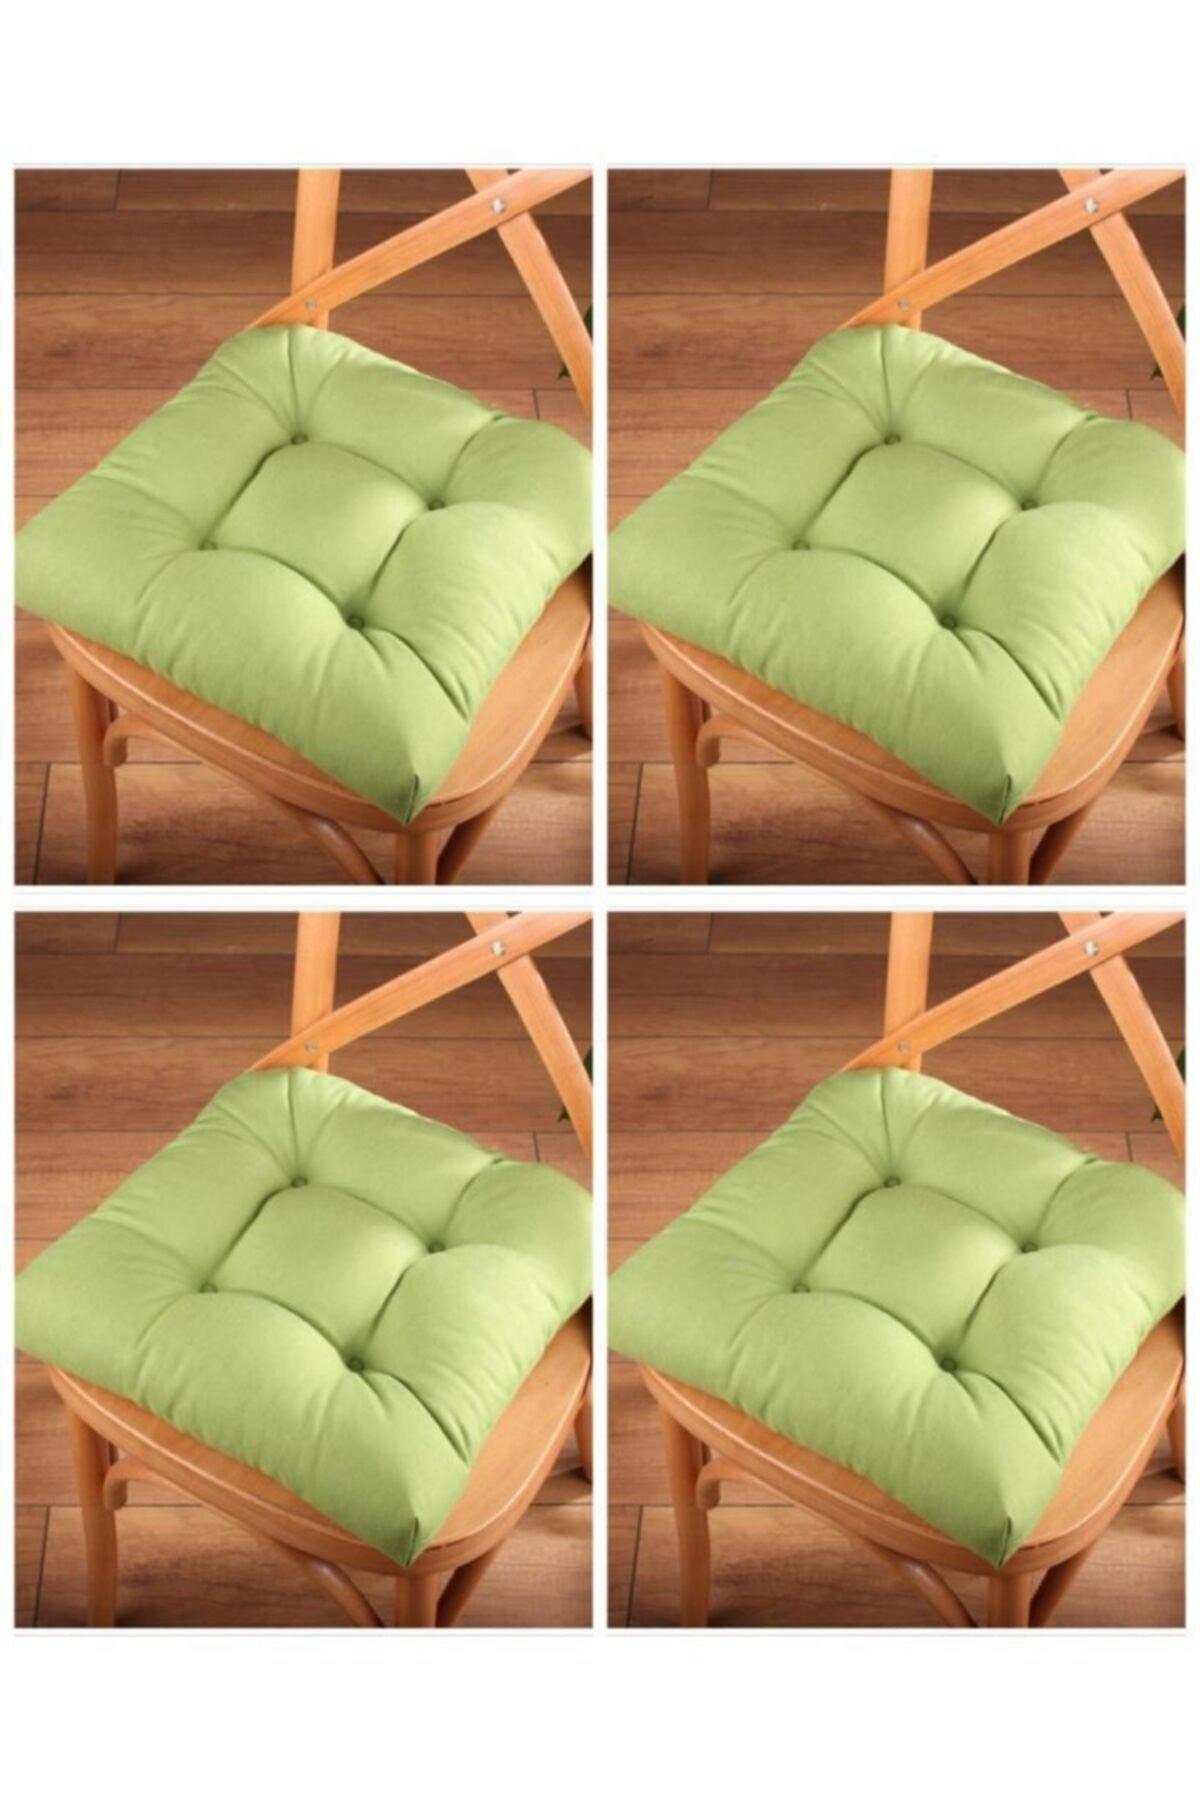 4 Lux Pofidik Green Chair Cushion Special